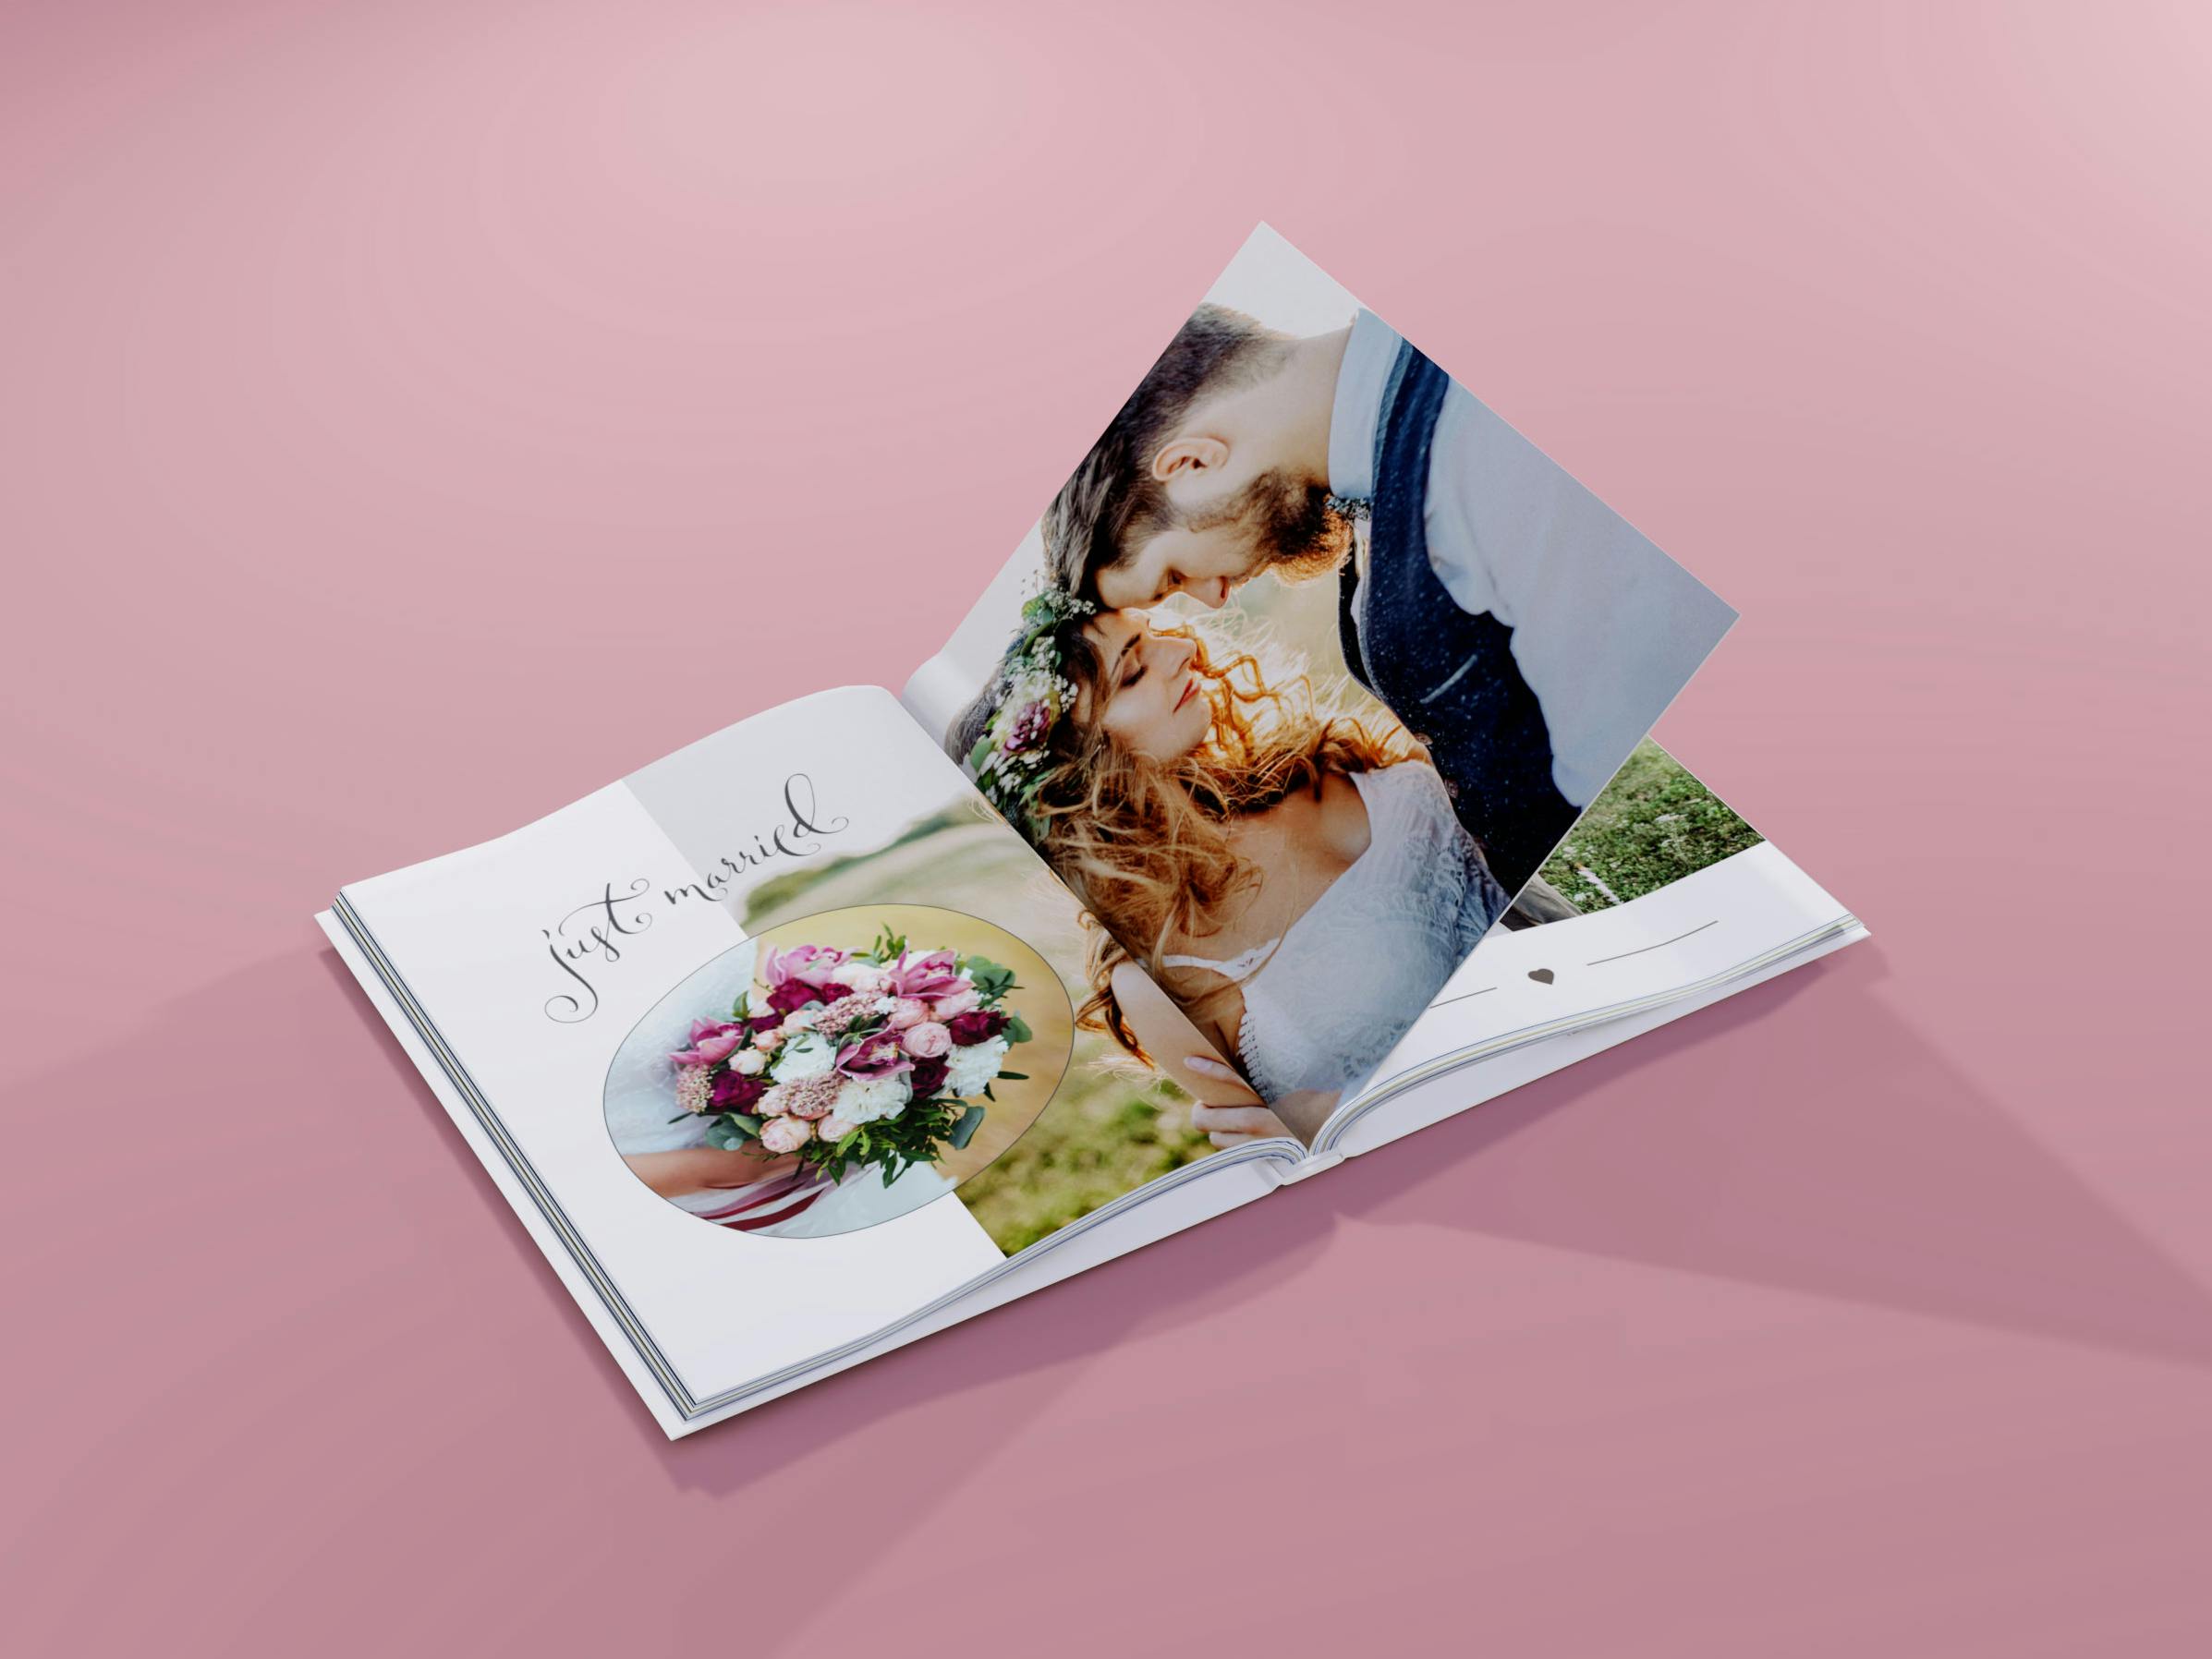 Opengeslagen fotoboek in staand formaat met trouwfoto's op een roze achtergrond